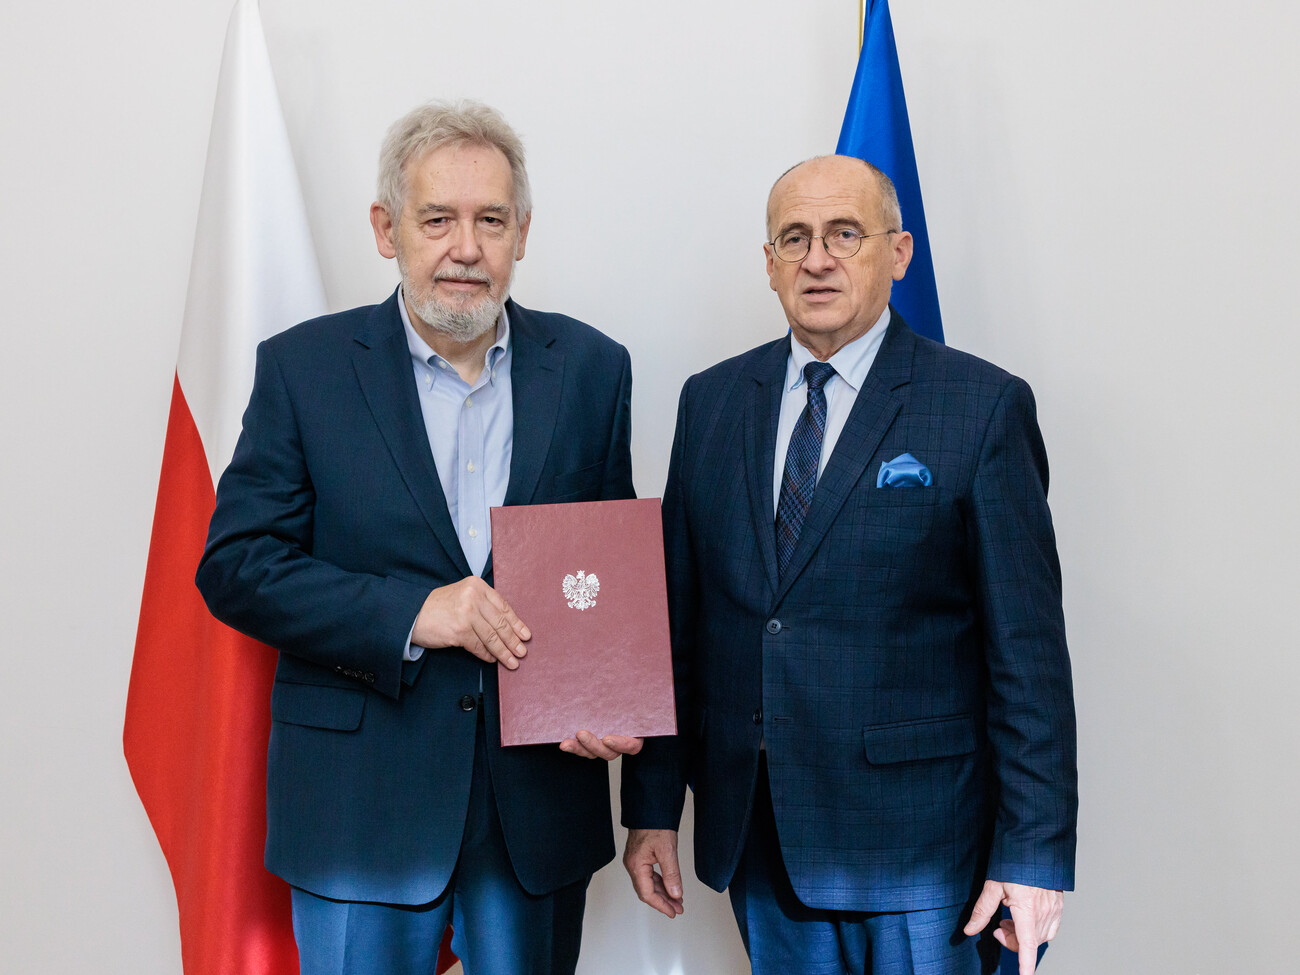 МИД Польши назначил нового посла в Украине